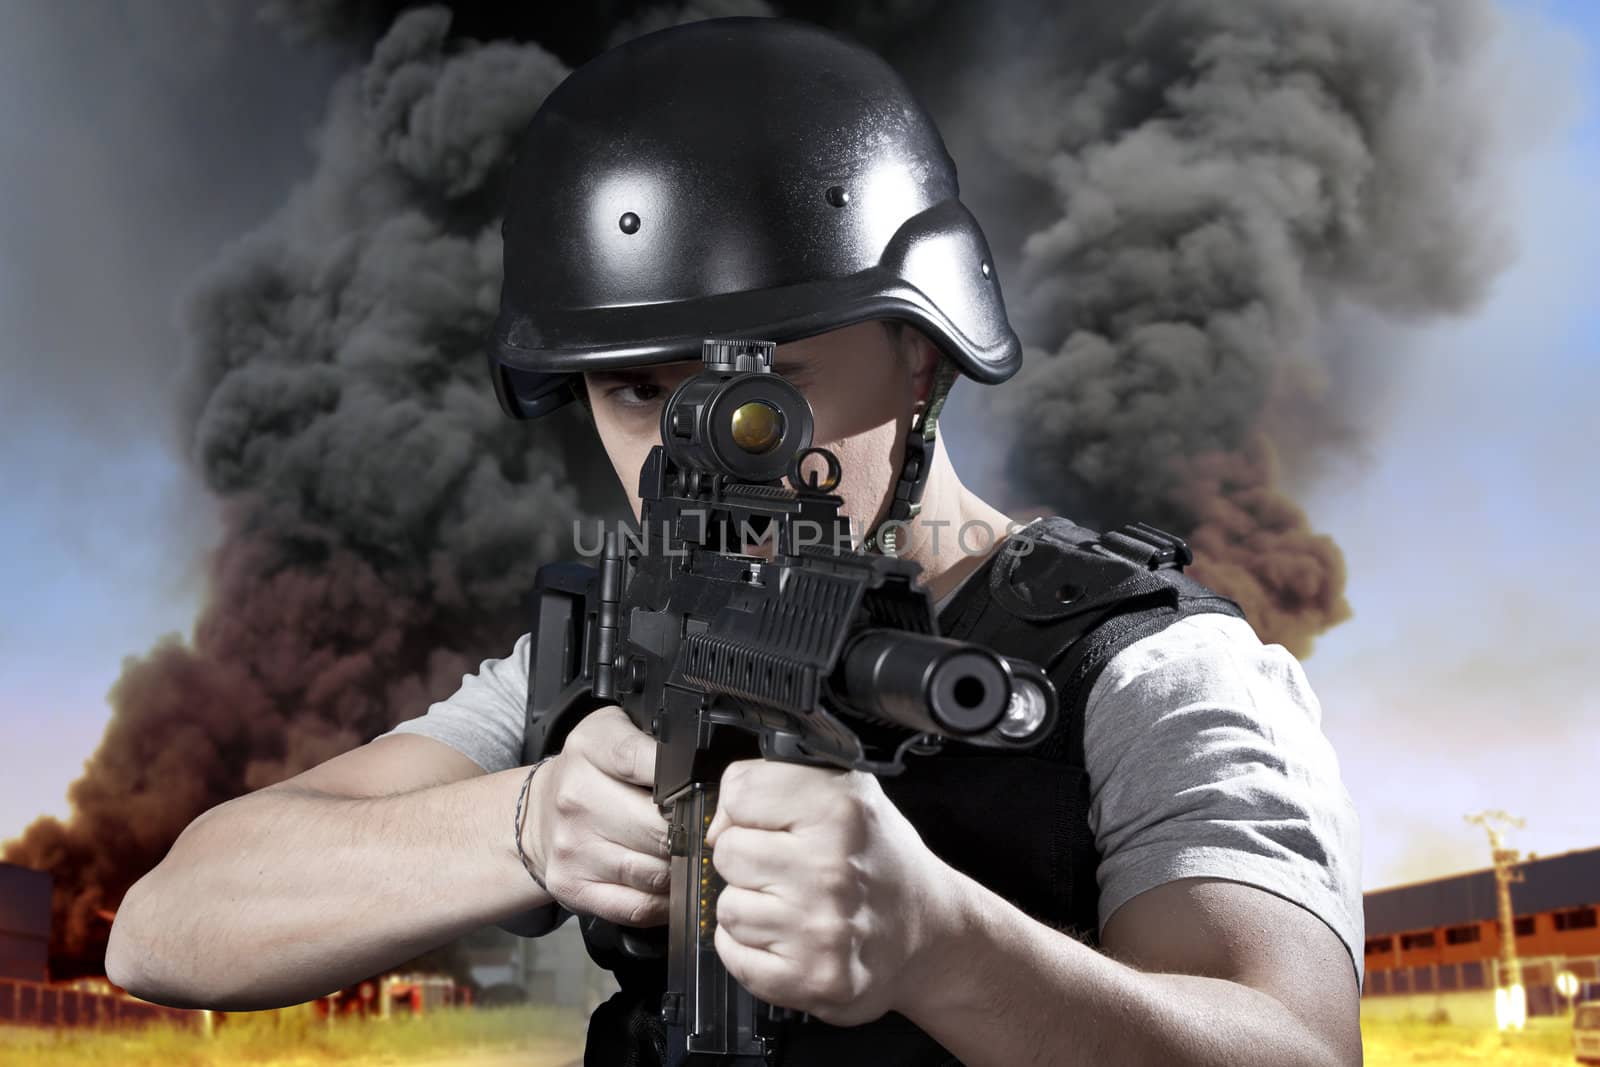 Industry security, armed police wearing bulletproof vests